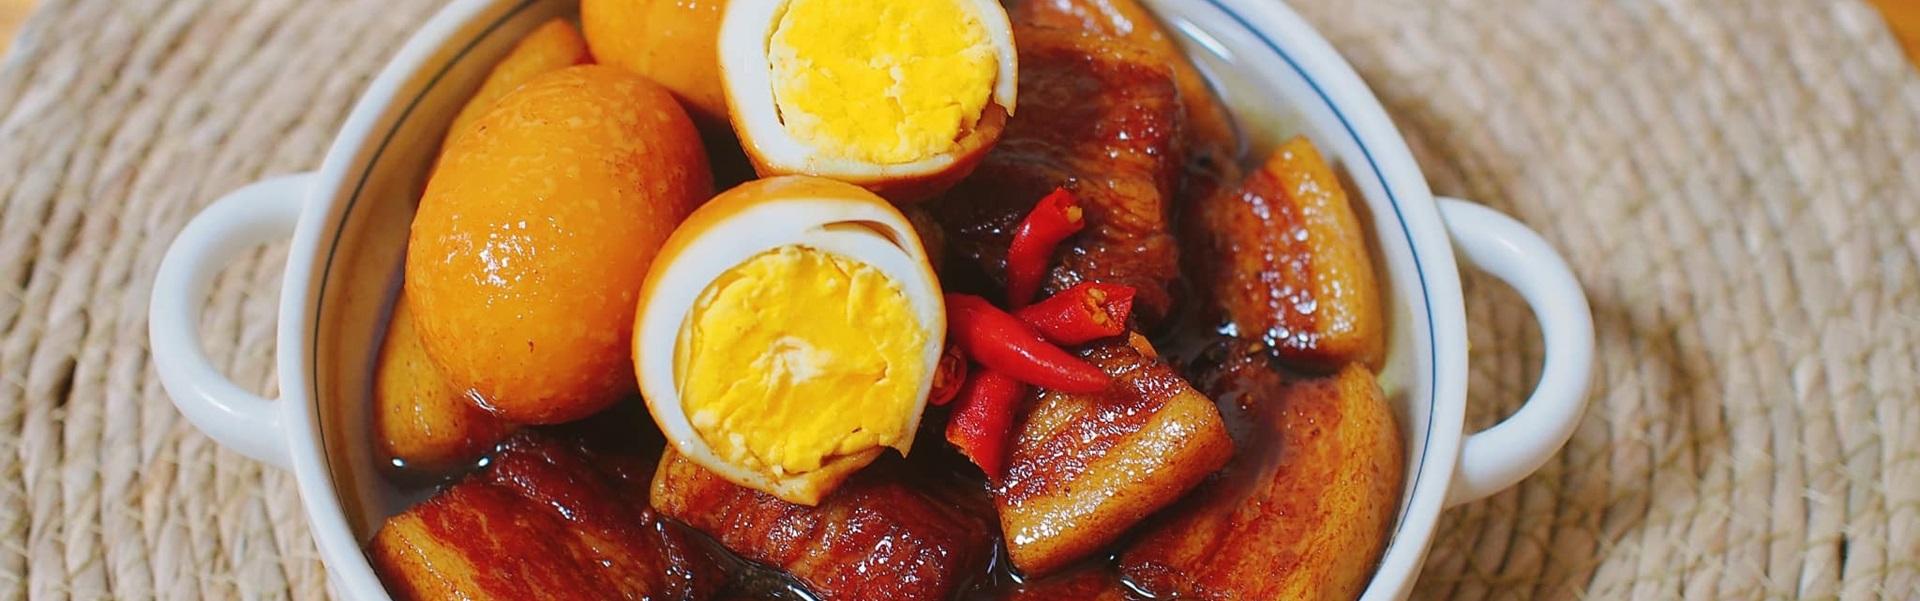 Recette du Thit Kho Hot Vit – Porc et œuf au caramel